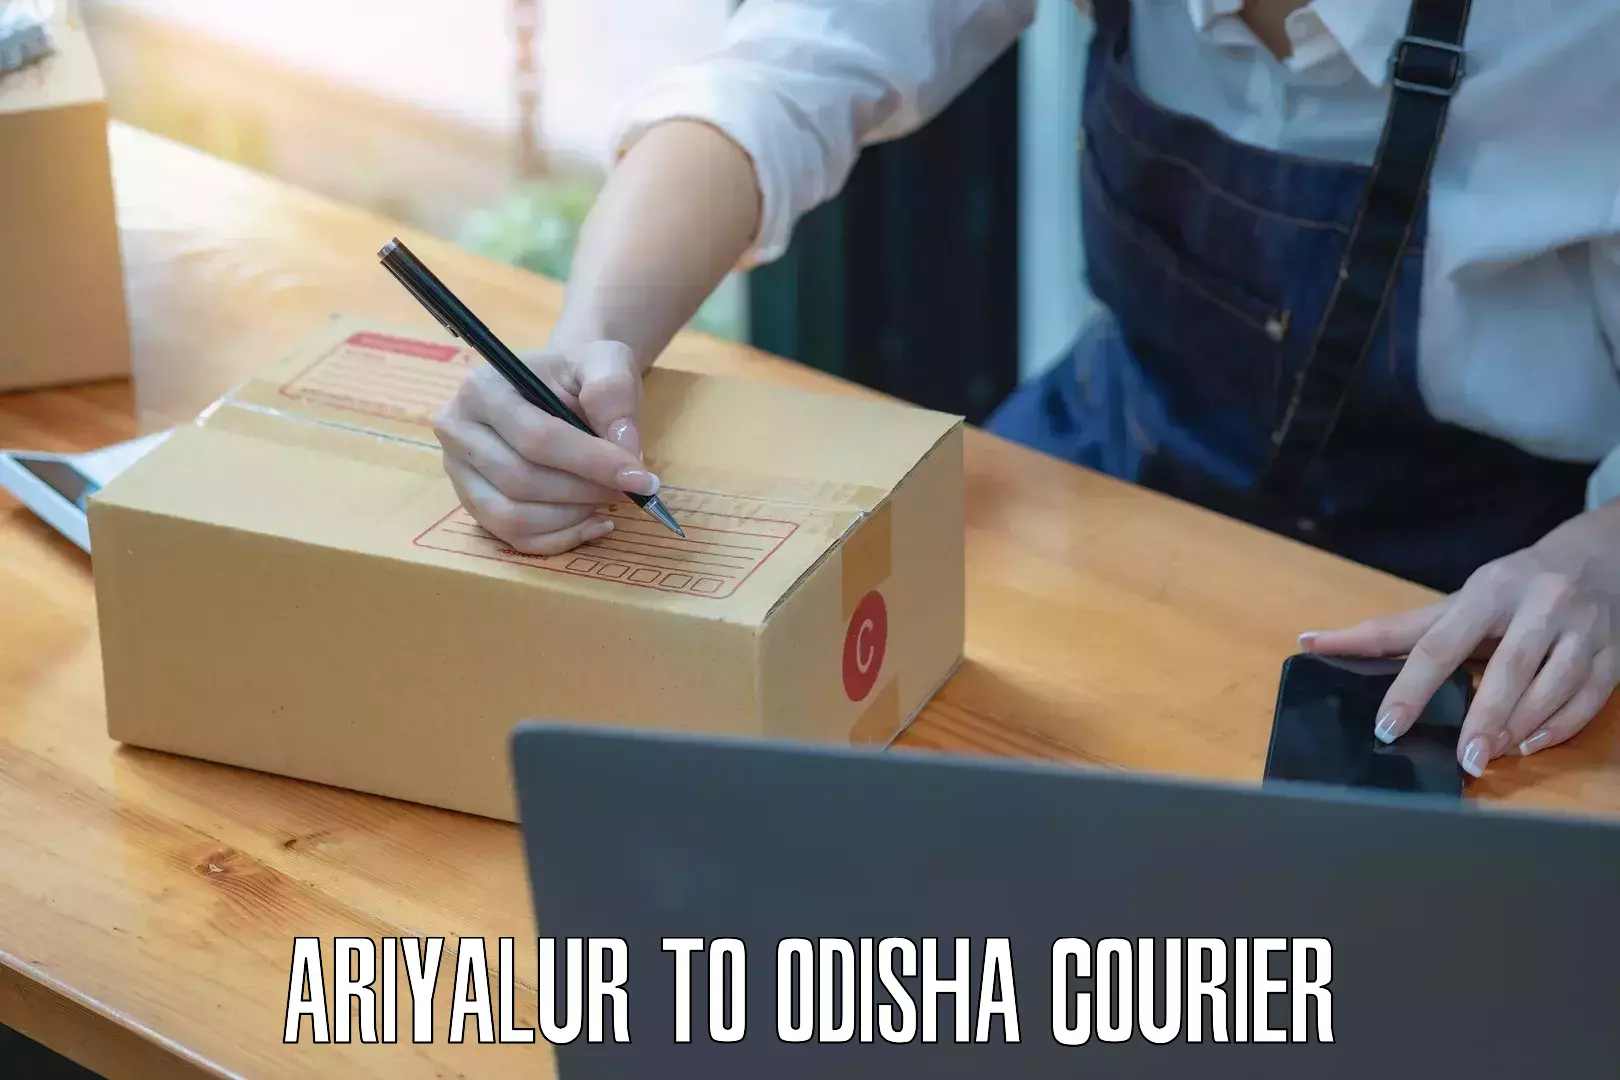 Courier service comparison Ariyalur to Kantabanji